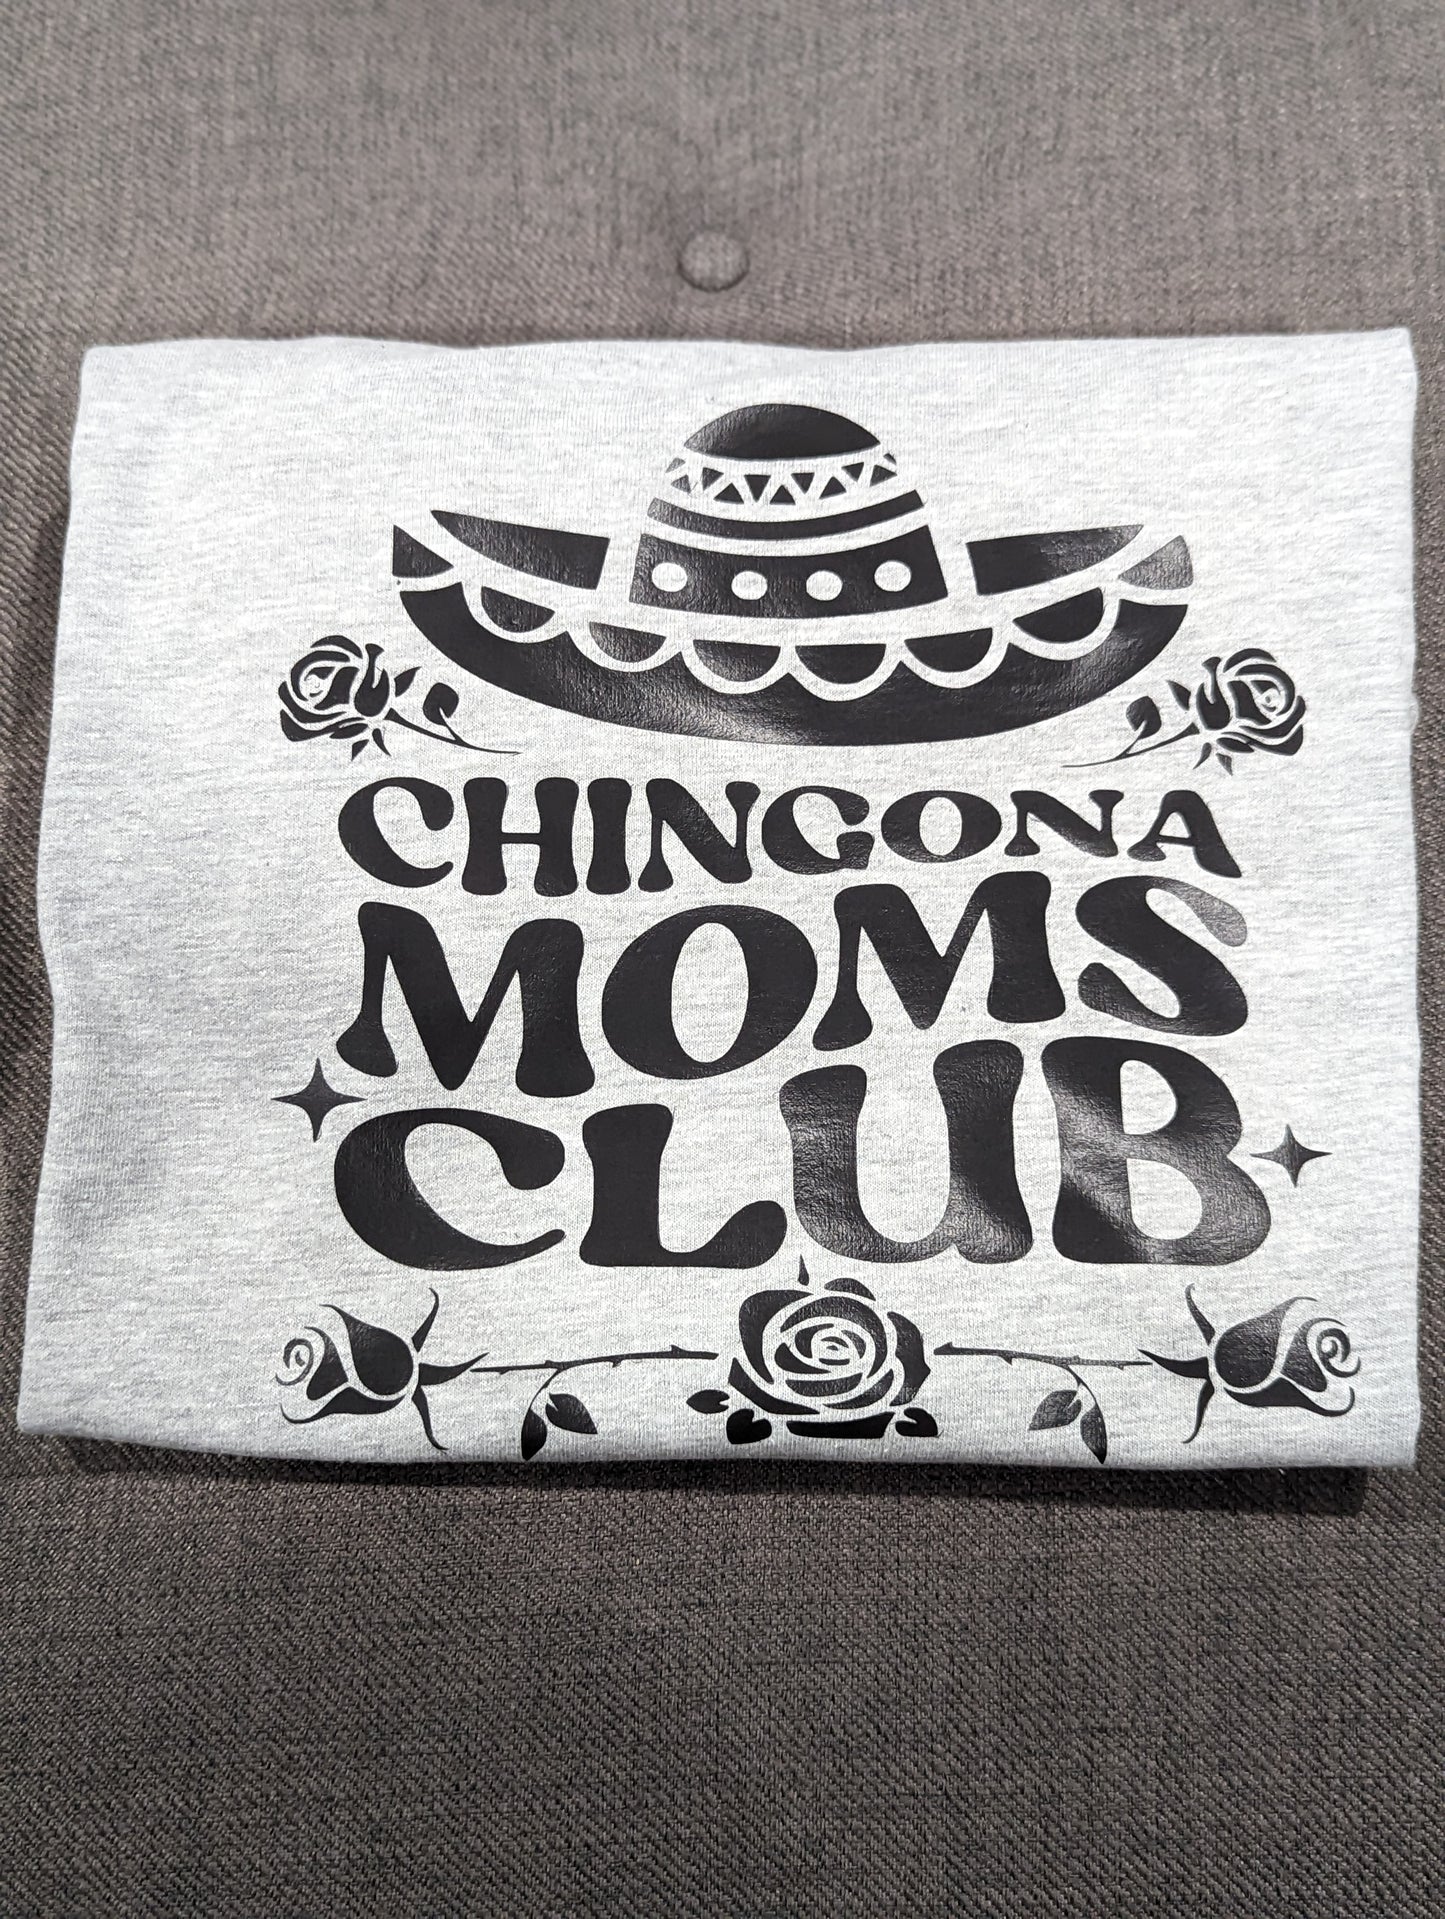 Chingona Moms Club tee